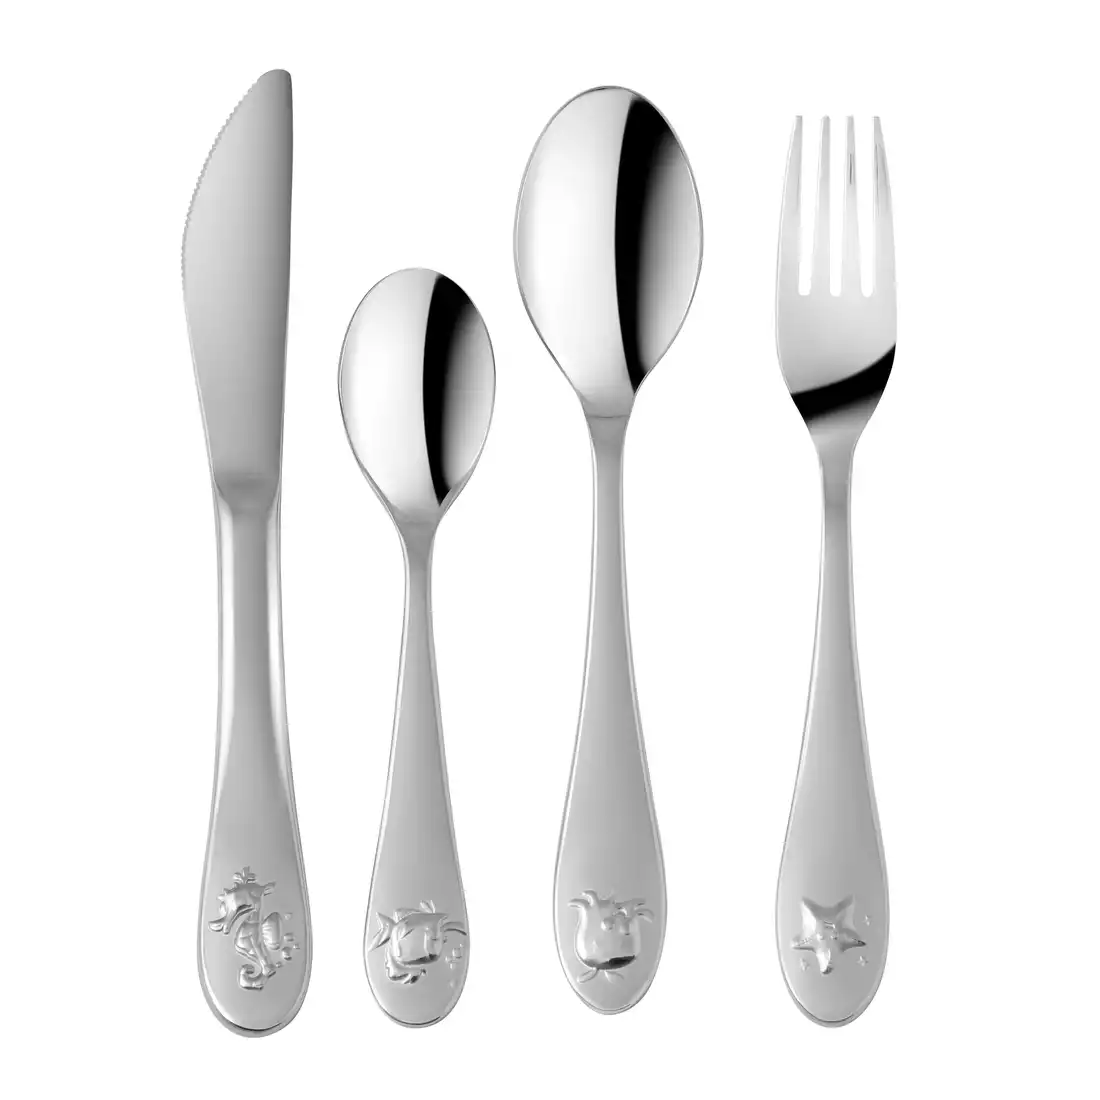 Vialli Design Mare children's cutlery set - 4-szt.